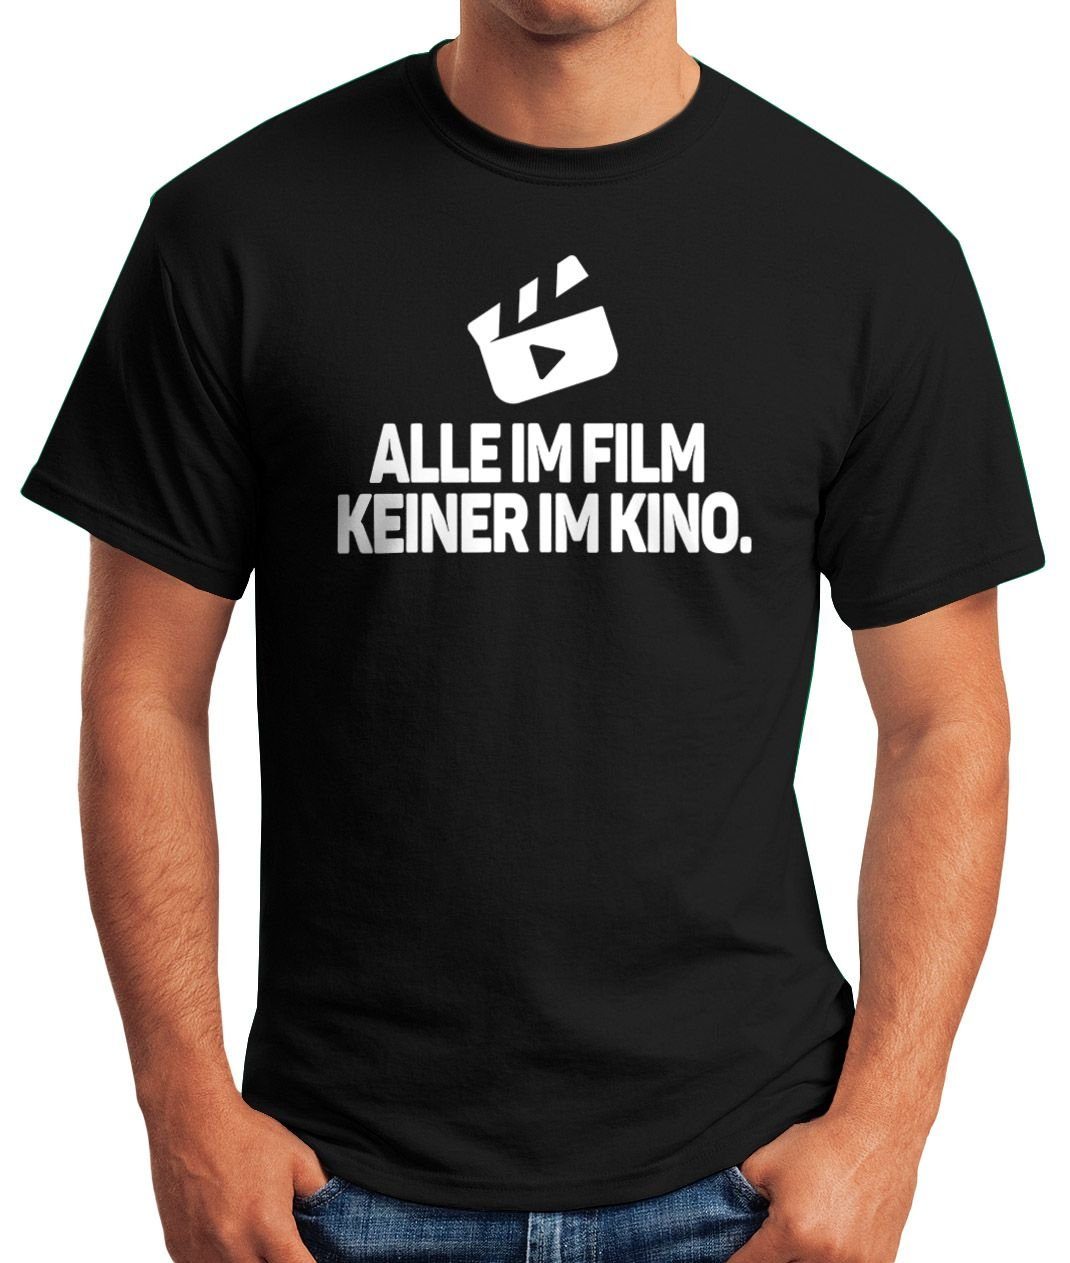 T-Shirt im Spruch Alle Party im Fun-Shirt Rave Techno Kino Oberteil mit Print Film Festival Keiner Herren Print-Shirt MoonWorks Moonworks®